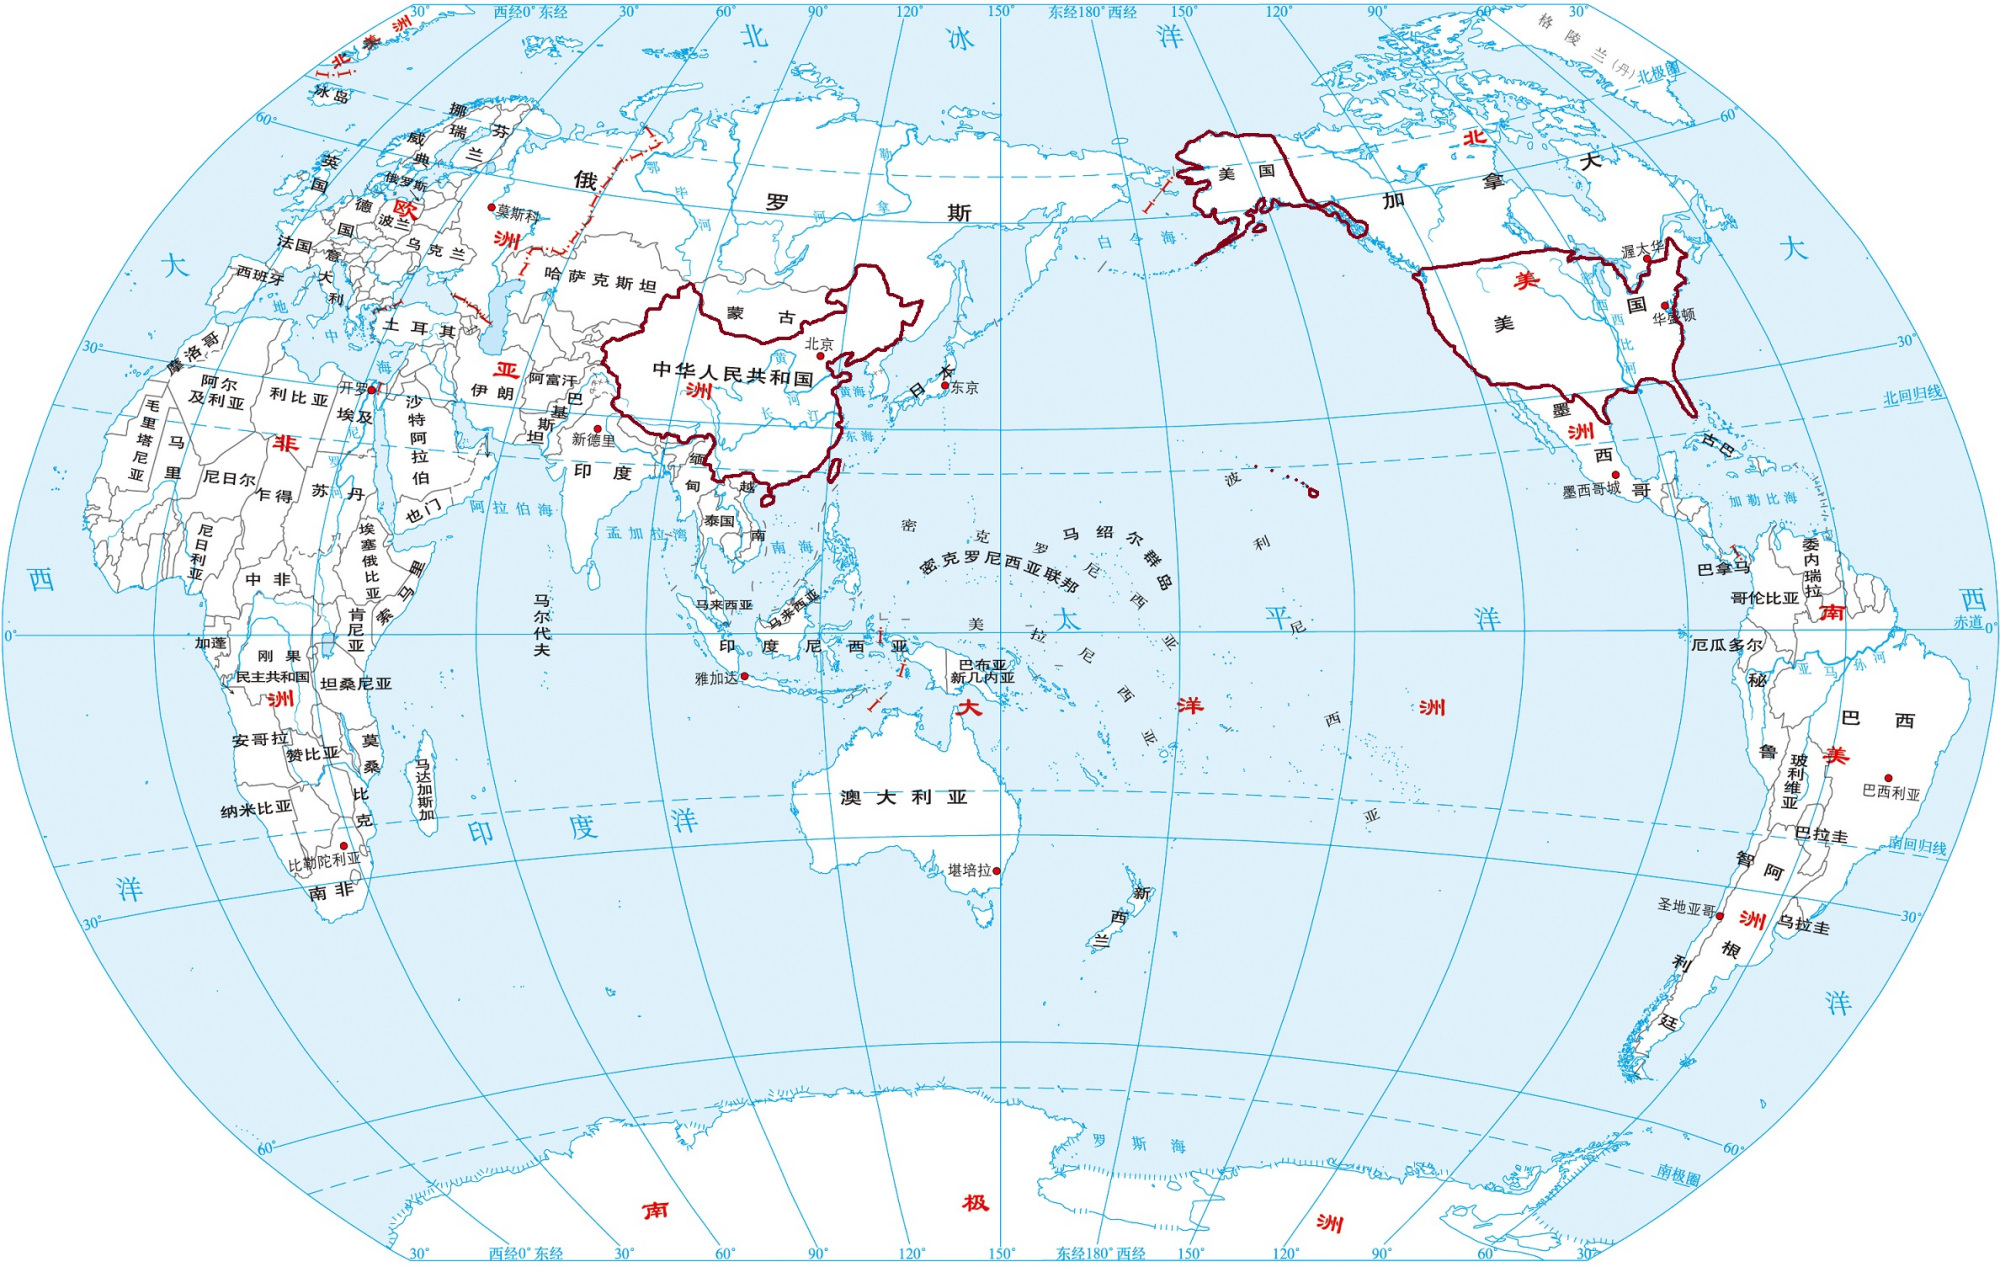 中国和美国纬度差不多,为什么飞机不是沿纬线方向飞行前往美国?